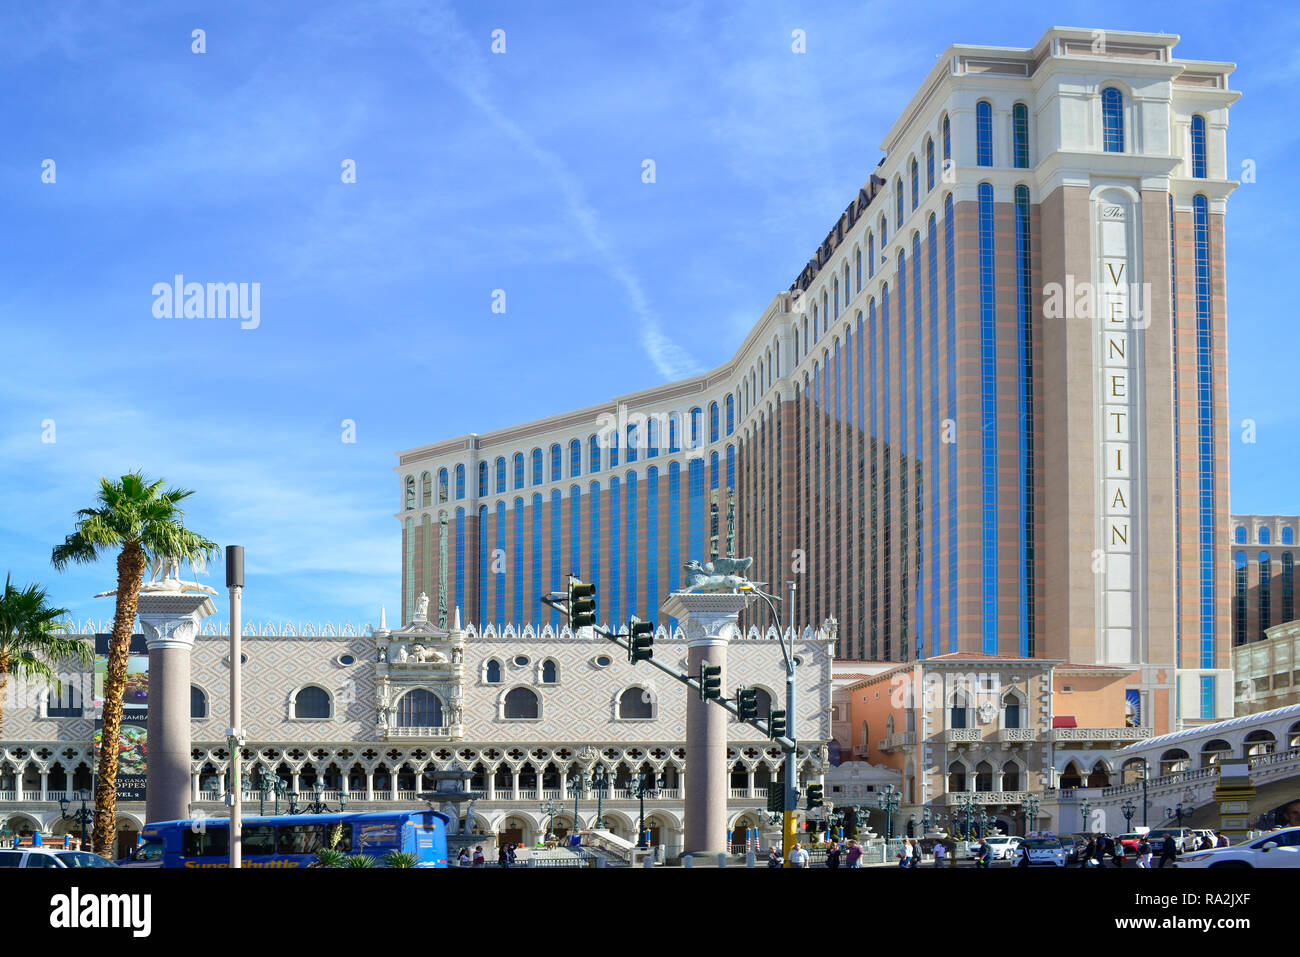 La belle Venetian Resort Las Vegas est un hôtel de luxe et un casino avec un thème vénitien vu architetural dans tout le détail des bâtiments, Banque D'Images